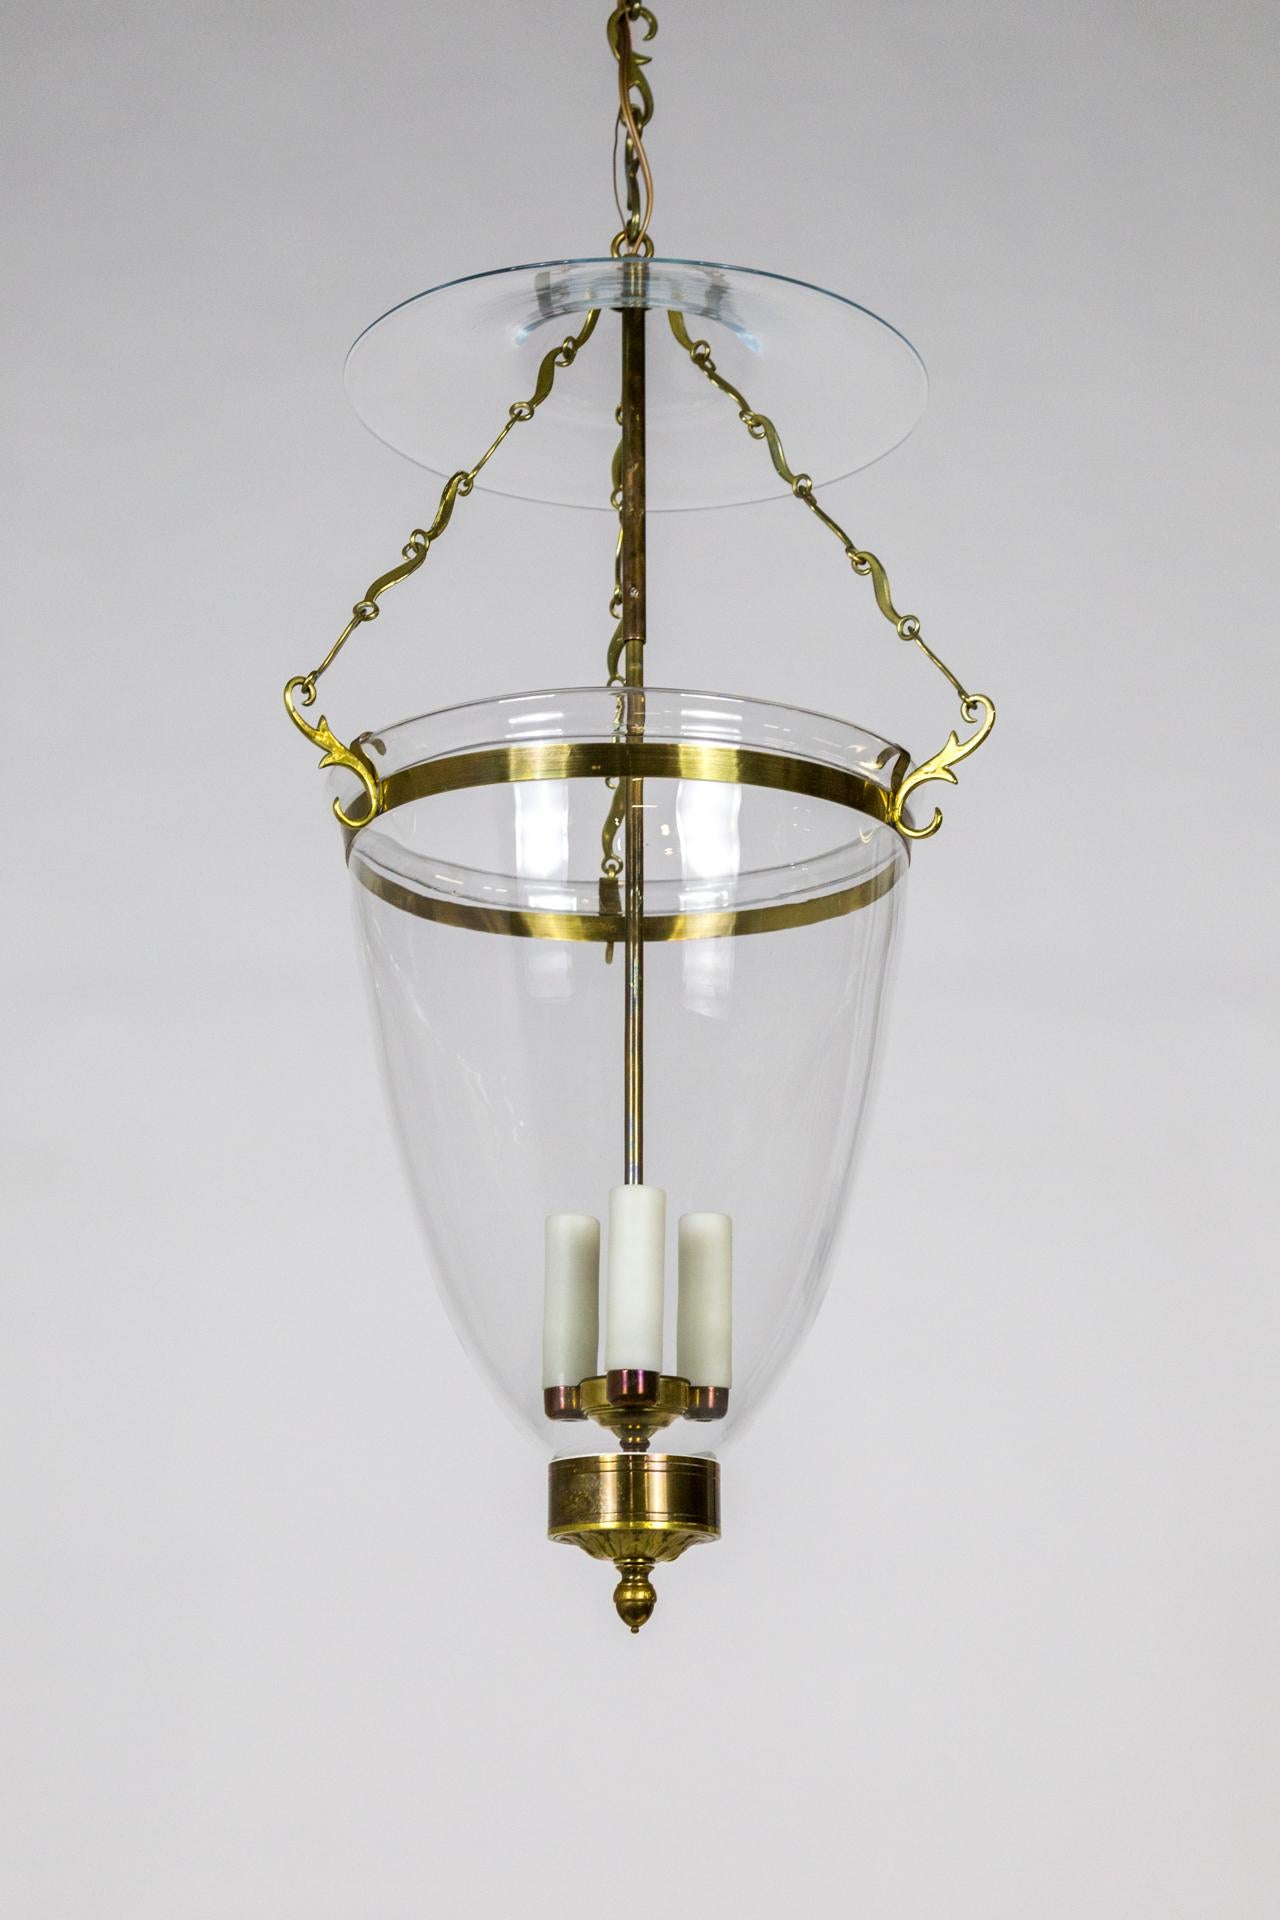 Belle Epoque Style Brass & Glass Bell Jar Lantern w/ Smoke Bell & Swirling Chain For Sale 4